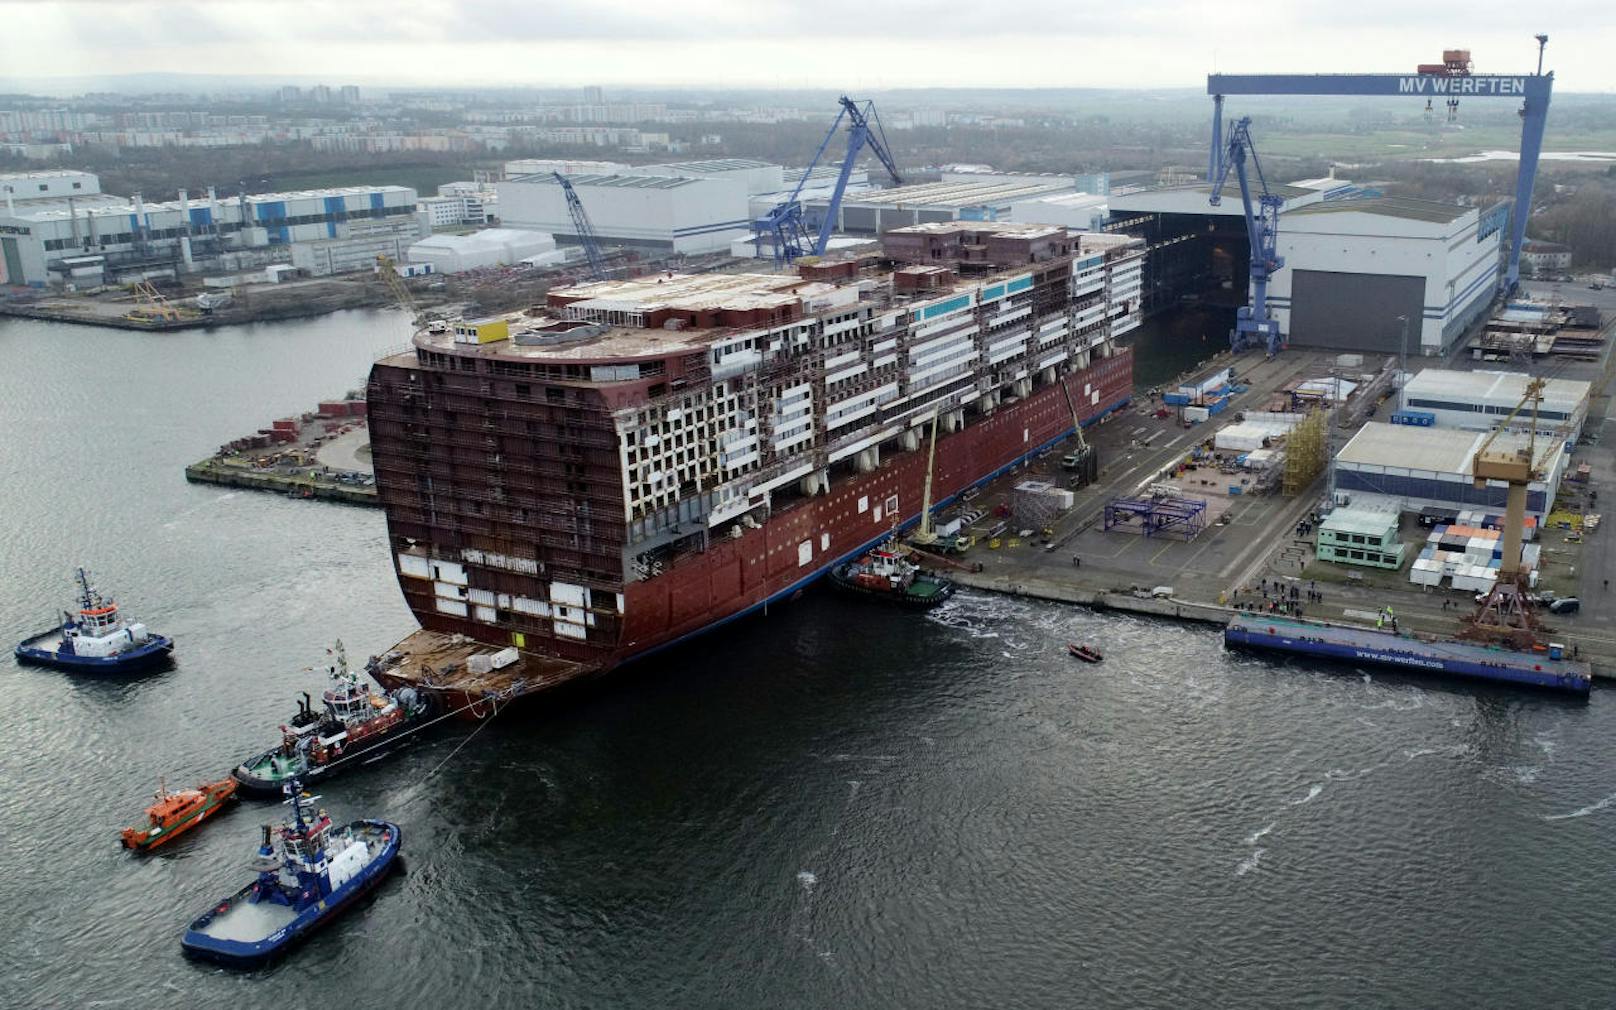 Die Mittelsektion der "Global Dream" beim Verlassen der Werft in Warnemünde am 22. November 2019.